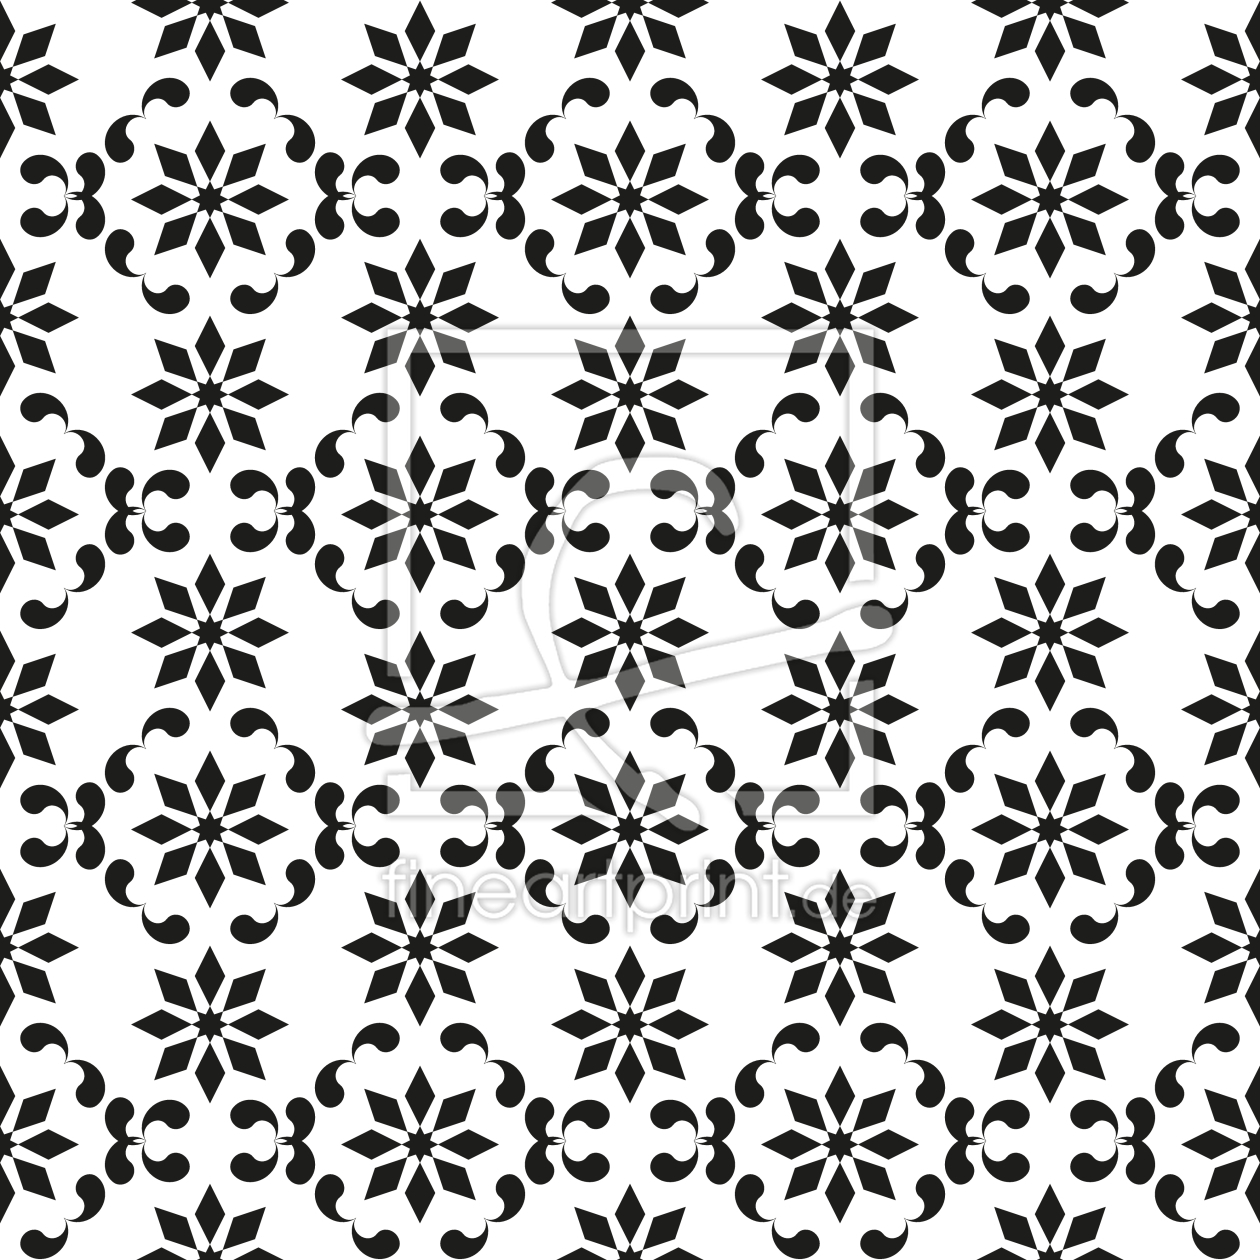 Bild-Nr.: 9015038 Schwingendes Blumengitter erstellt von patterndesigns-com